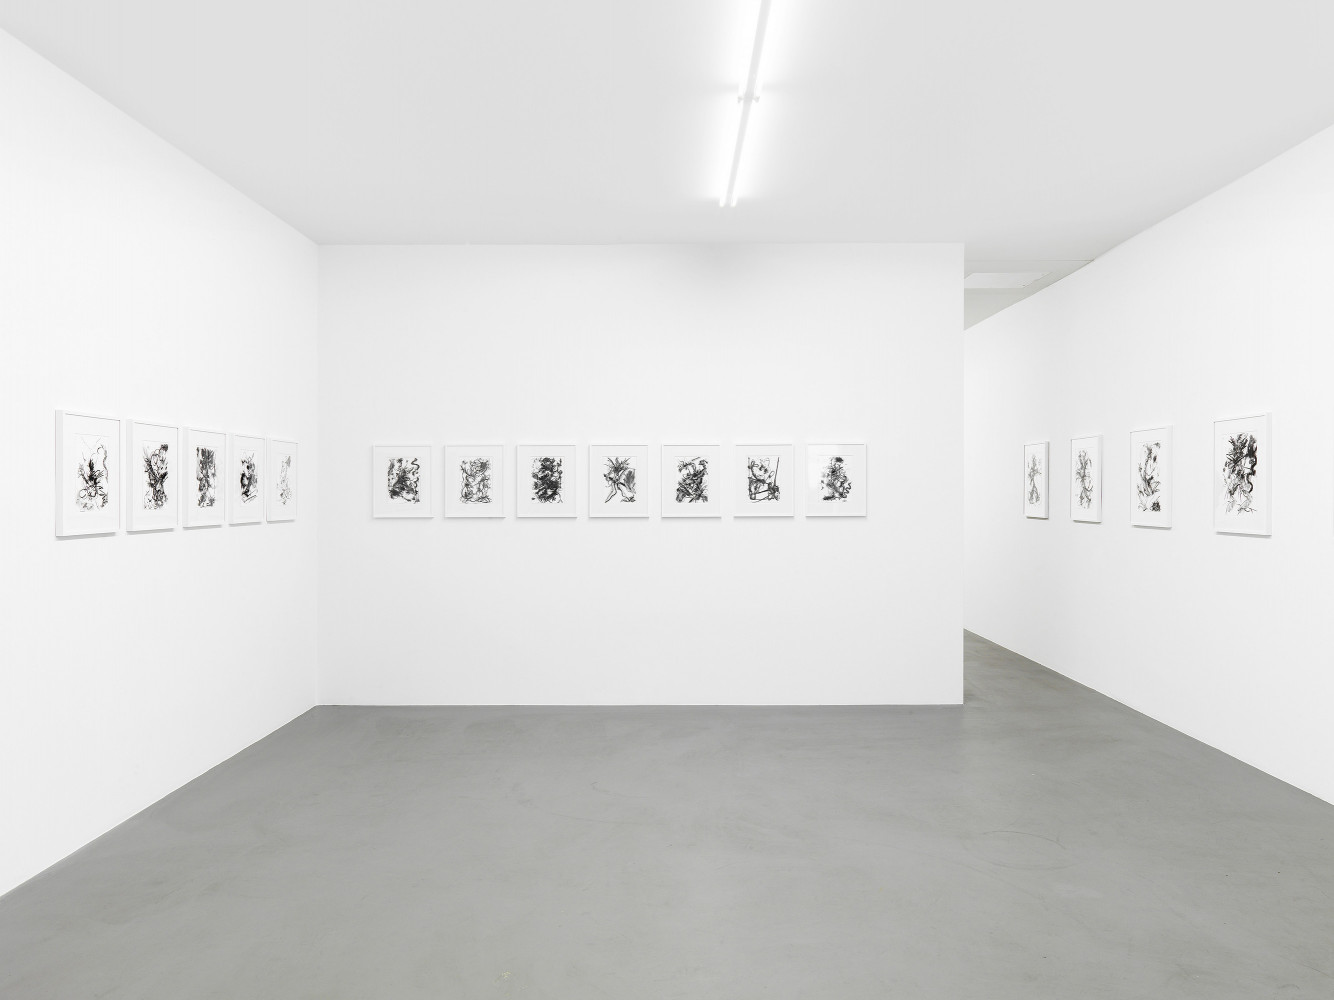 Fiona Rae, ‘Zeichnungen’, Installationsansicht, Buchmann Galerie, 2014